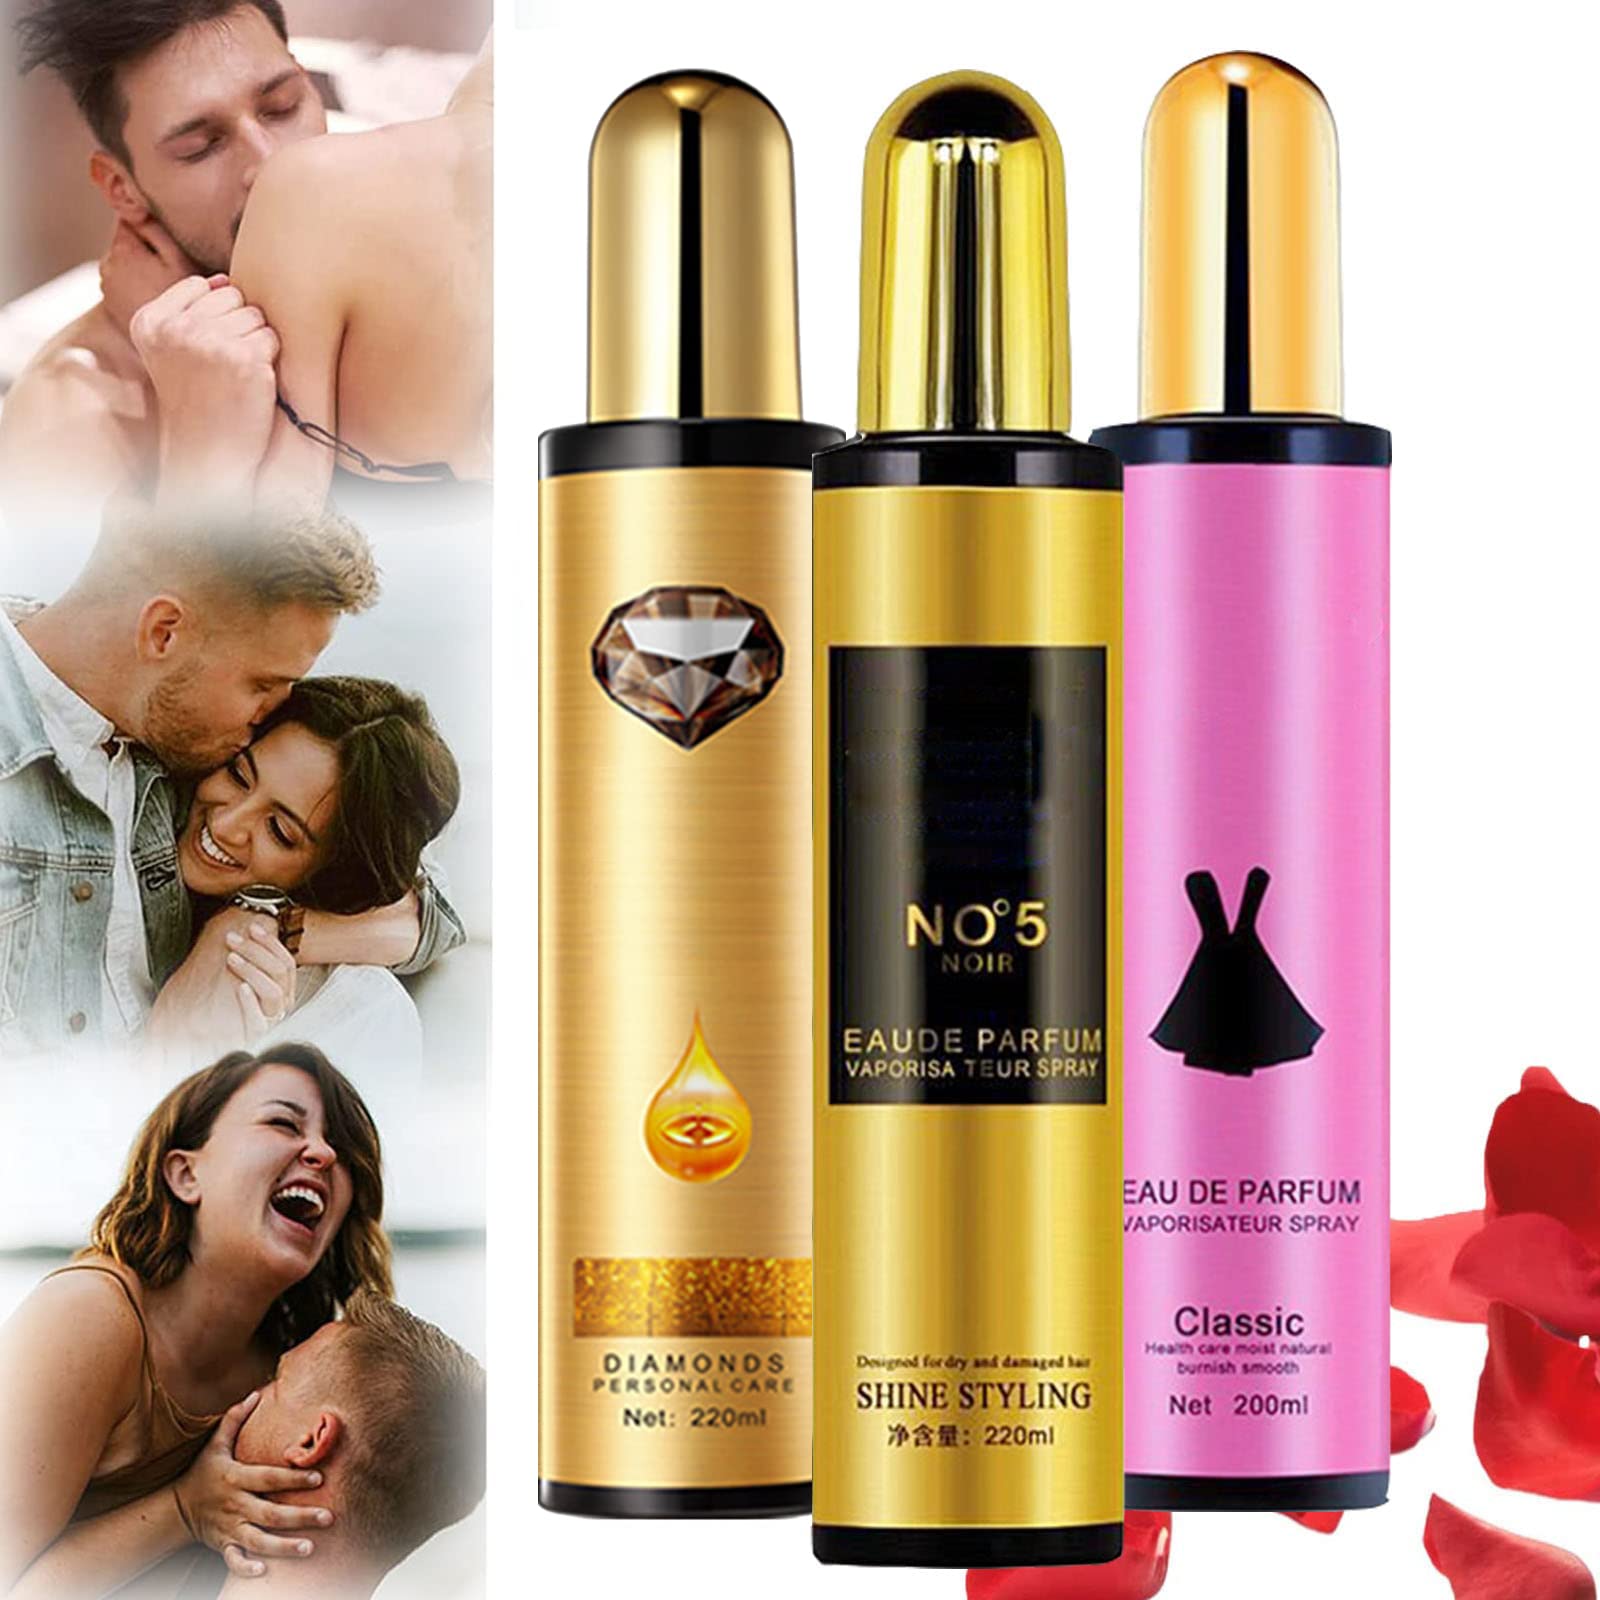 Pheromone Hair Perfume Mist, Venus Mist Feromone Essence Hair